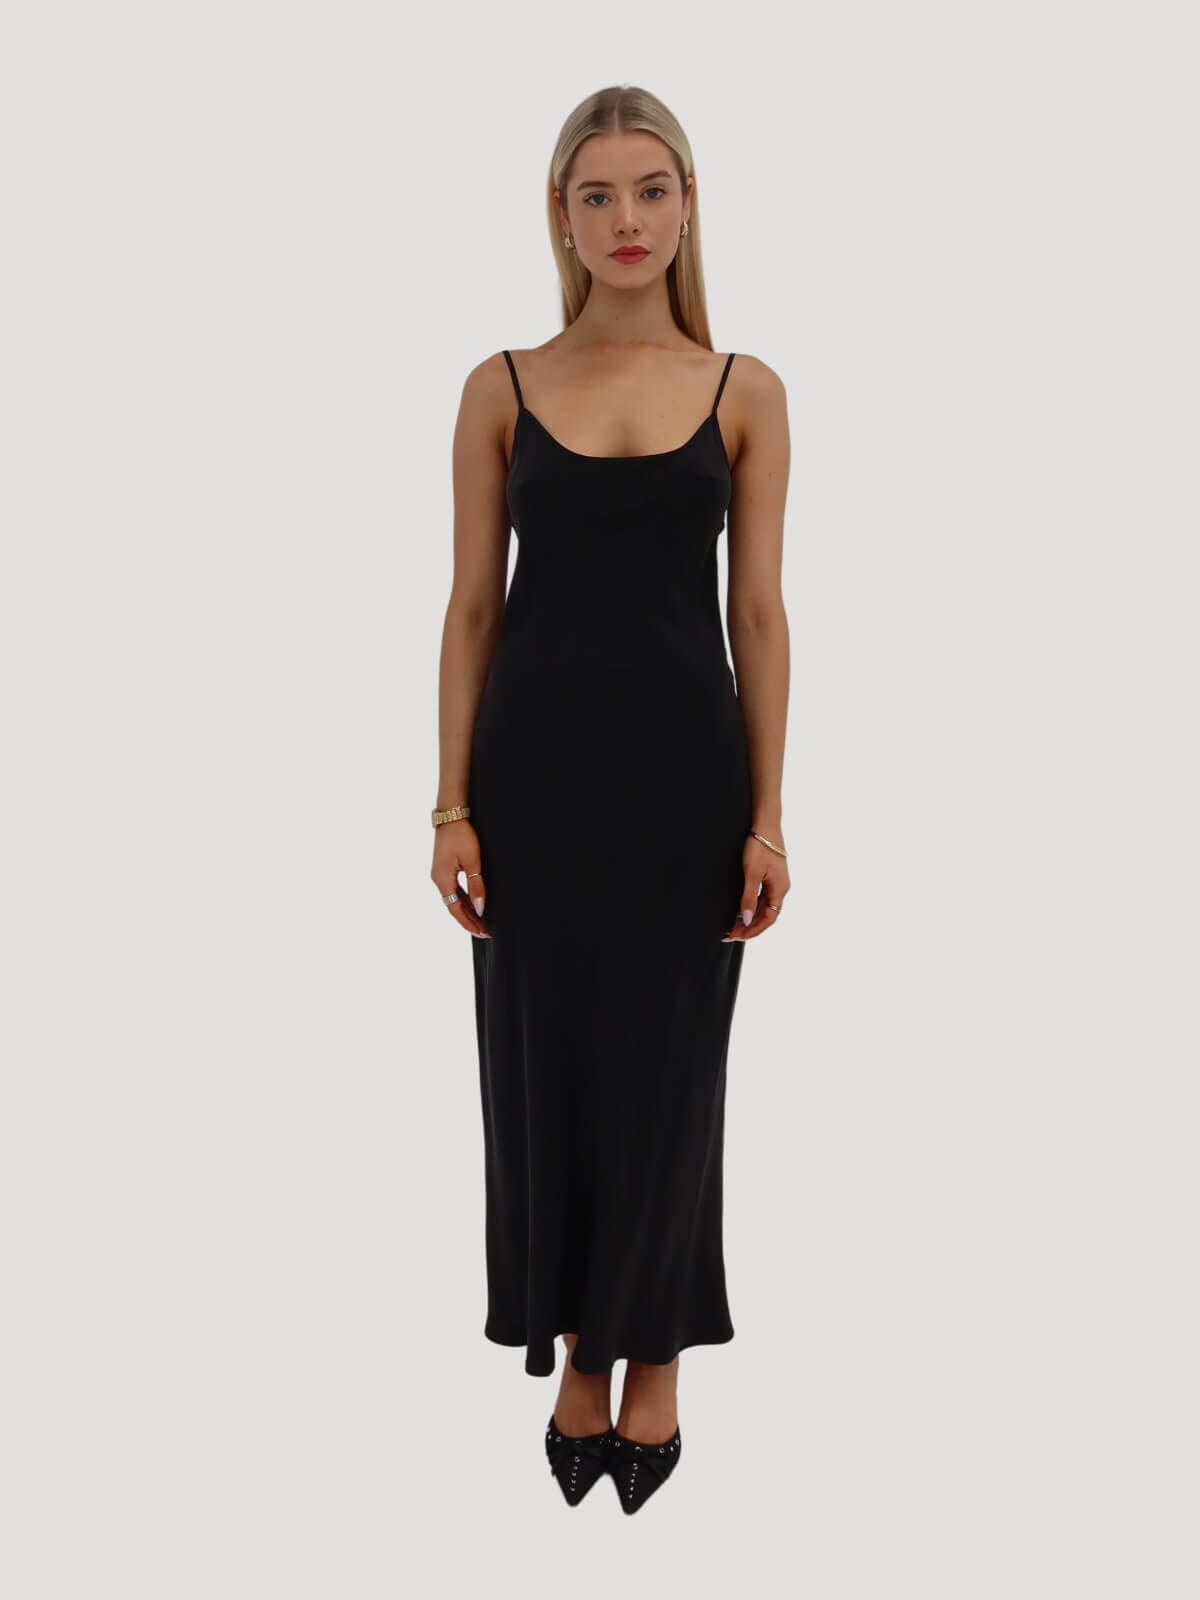 Silk Laundry Slip Dress Smoke Grey Size AU 6